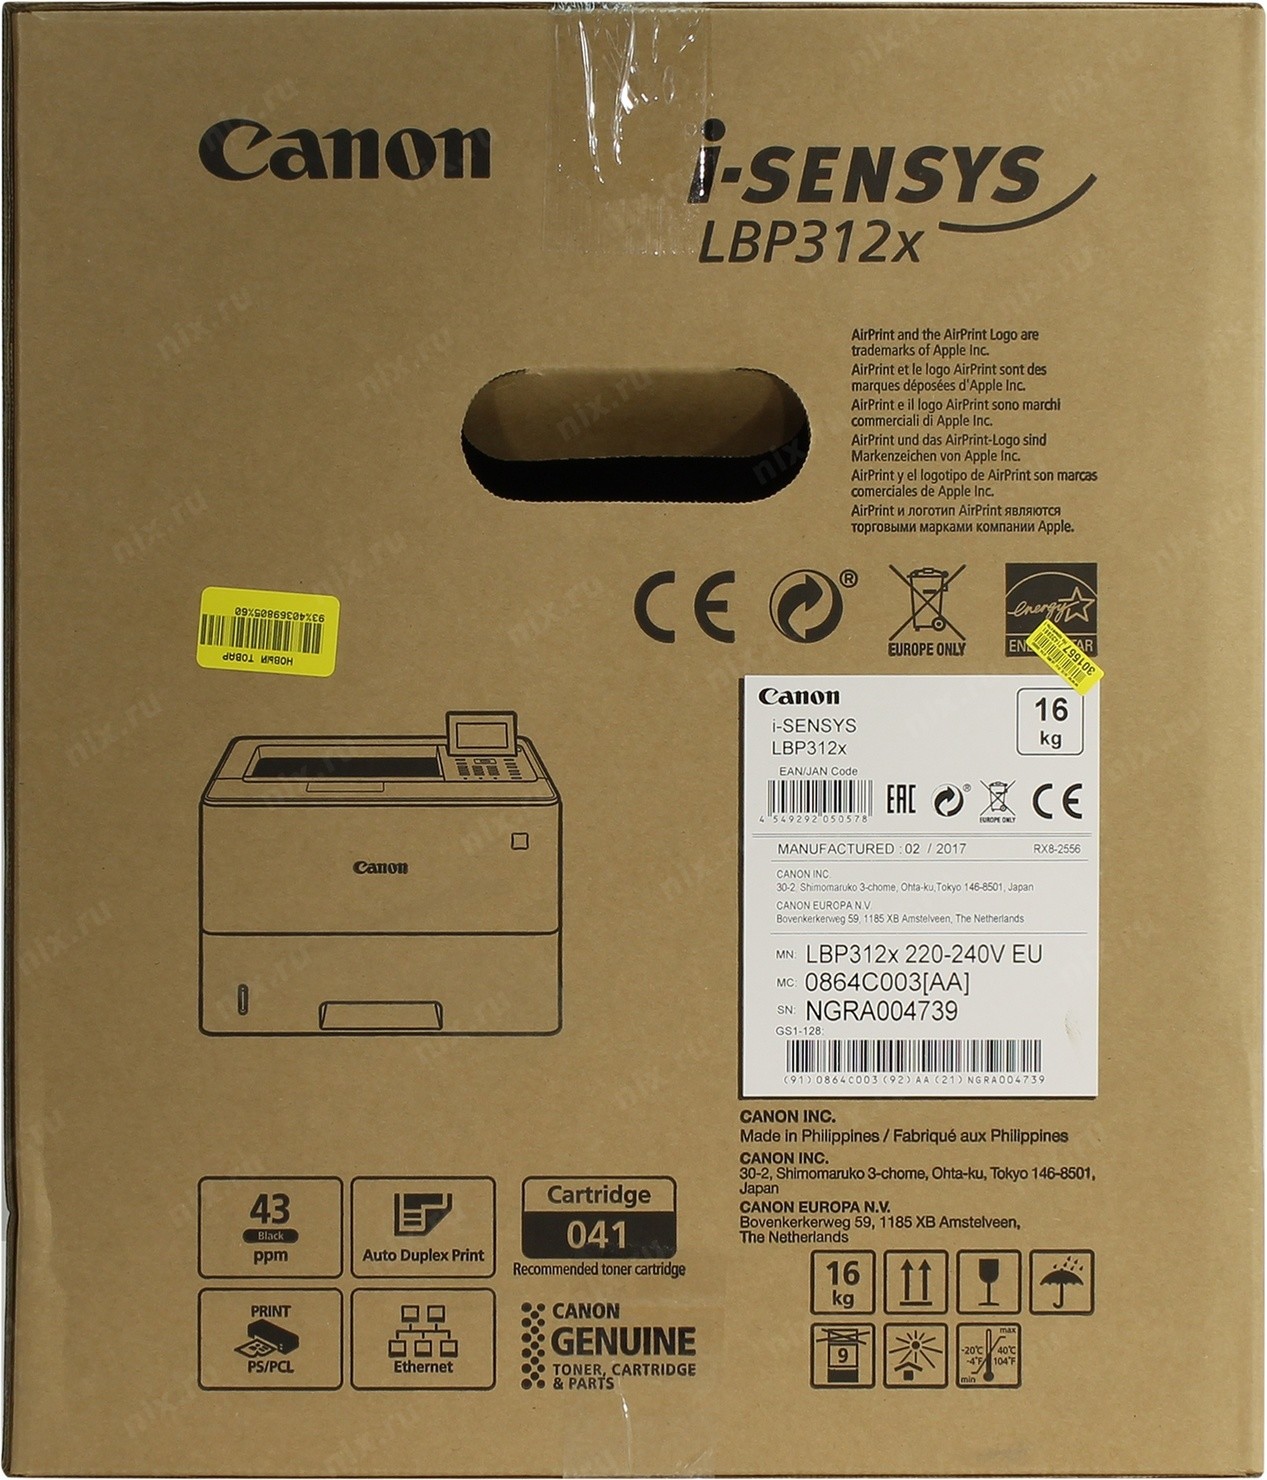 Обзор нового принтера Canon LBP312x: характеристики, цена и отзывы